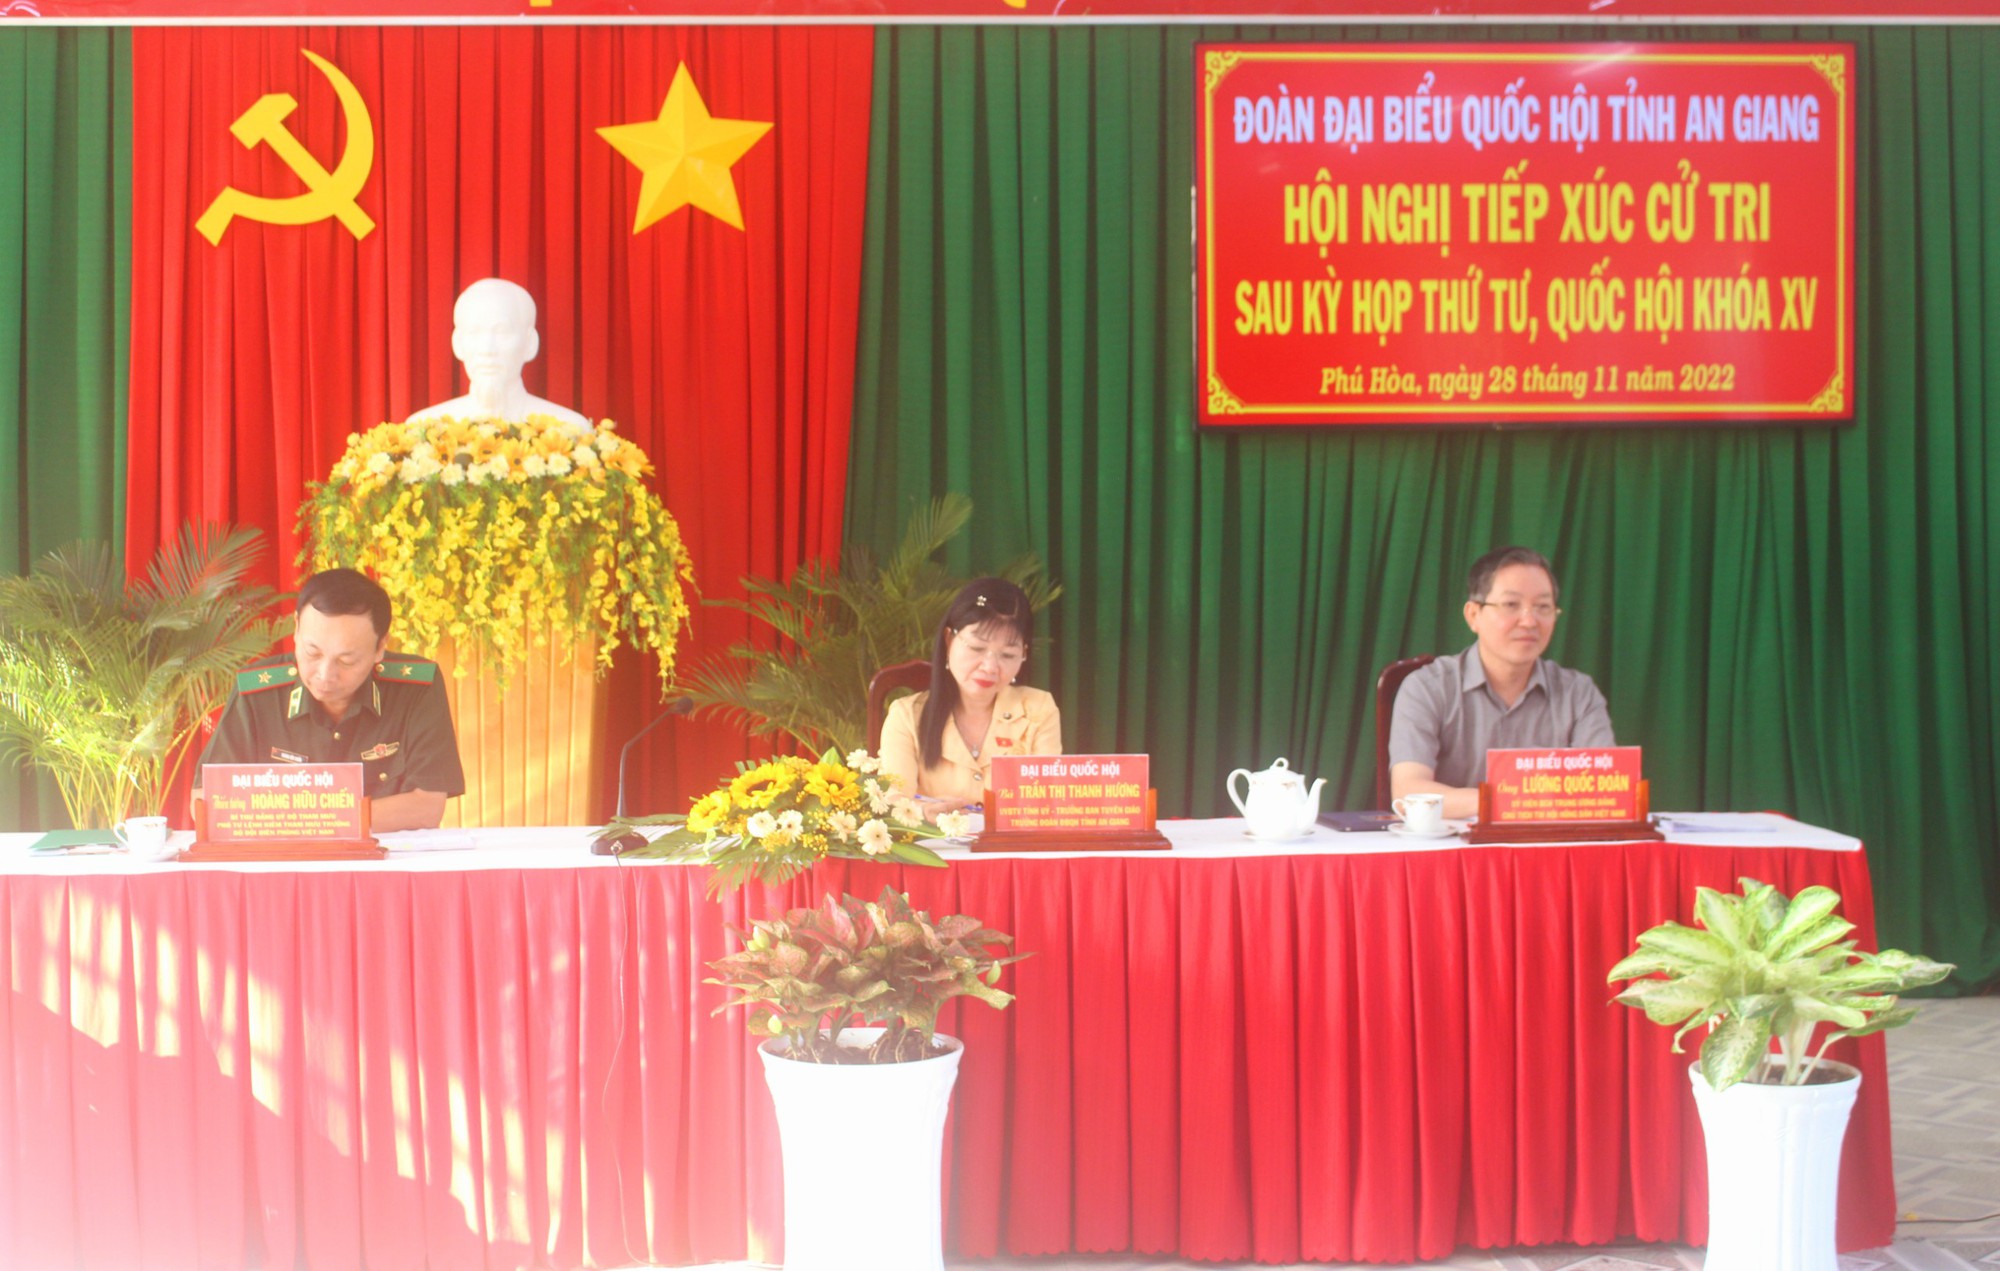 Chủ tịch Hội Nông Việt Nam Lương Quốc Đoàn tiếp xúc cử tri tại An Giang - Ảnh 1.